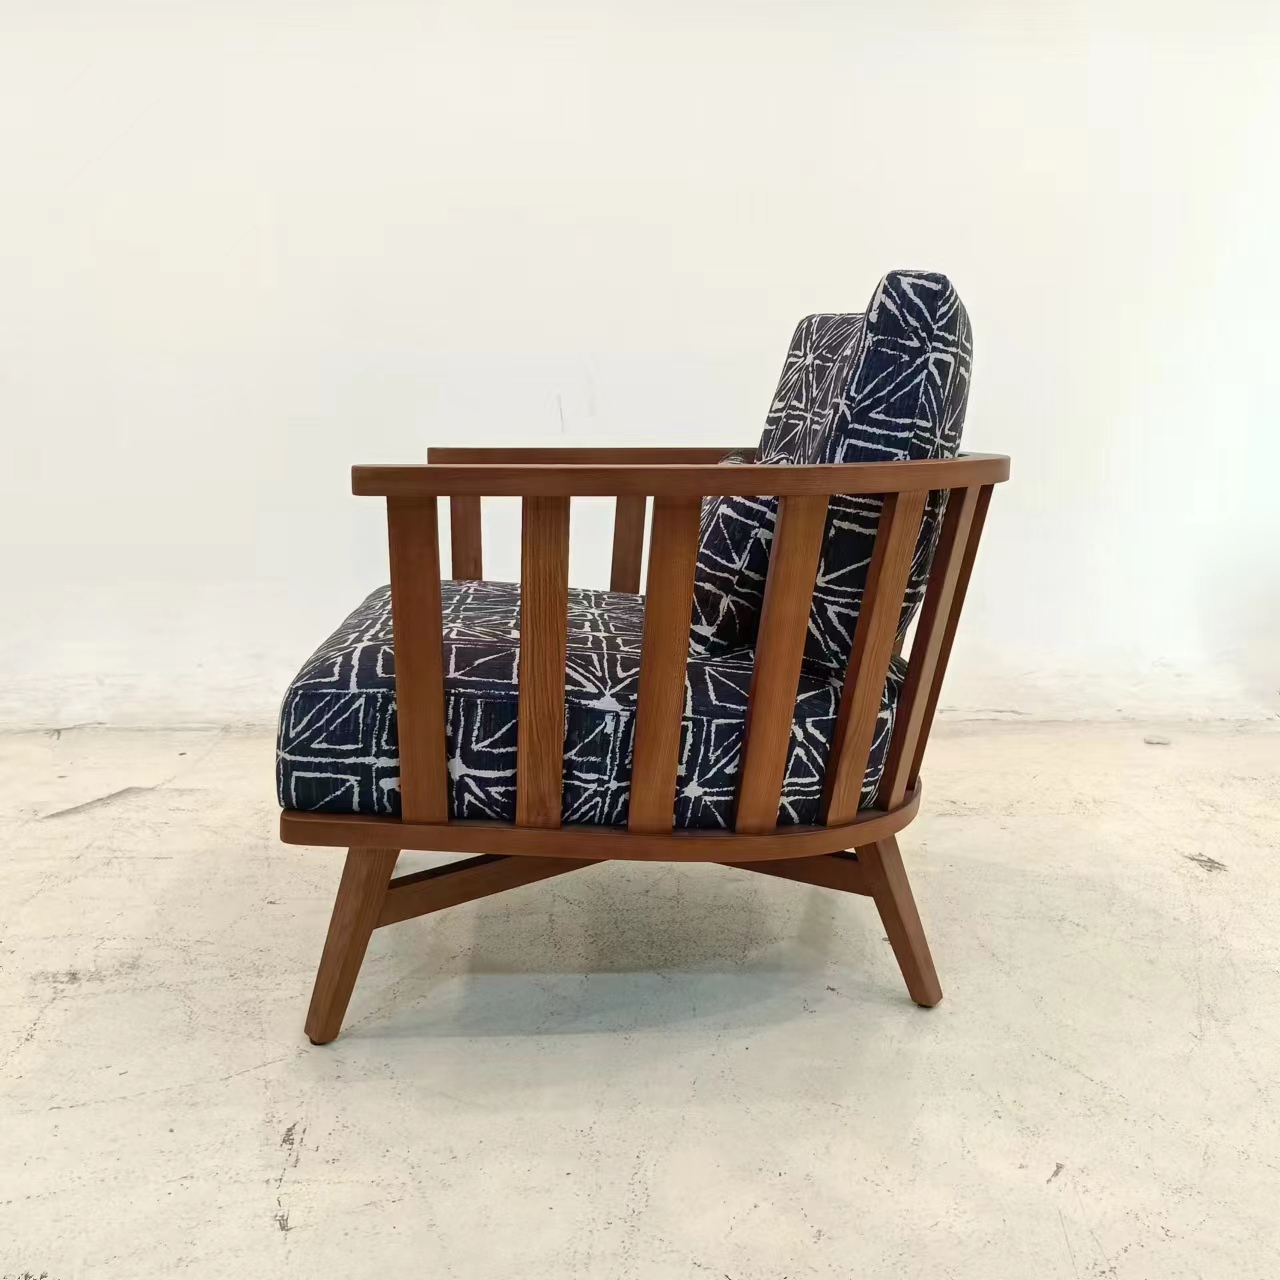 实木单椅